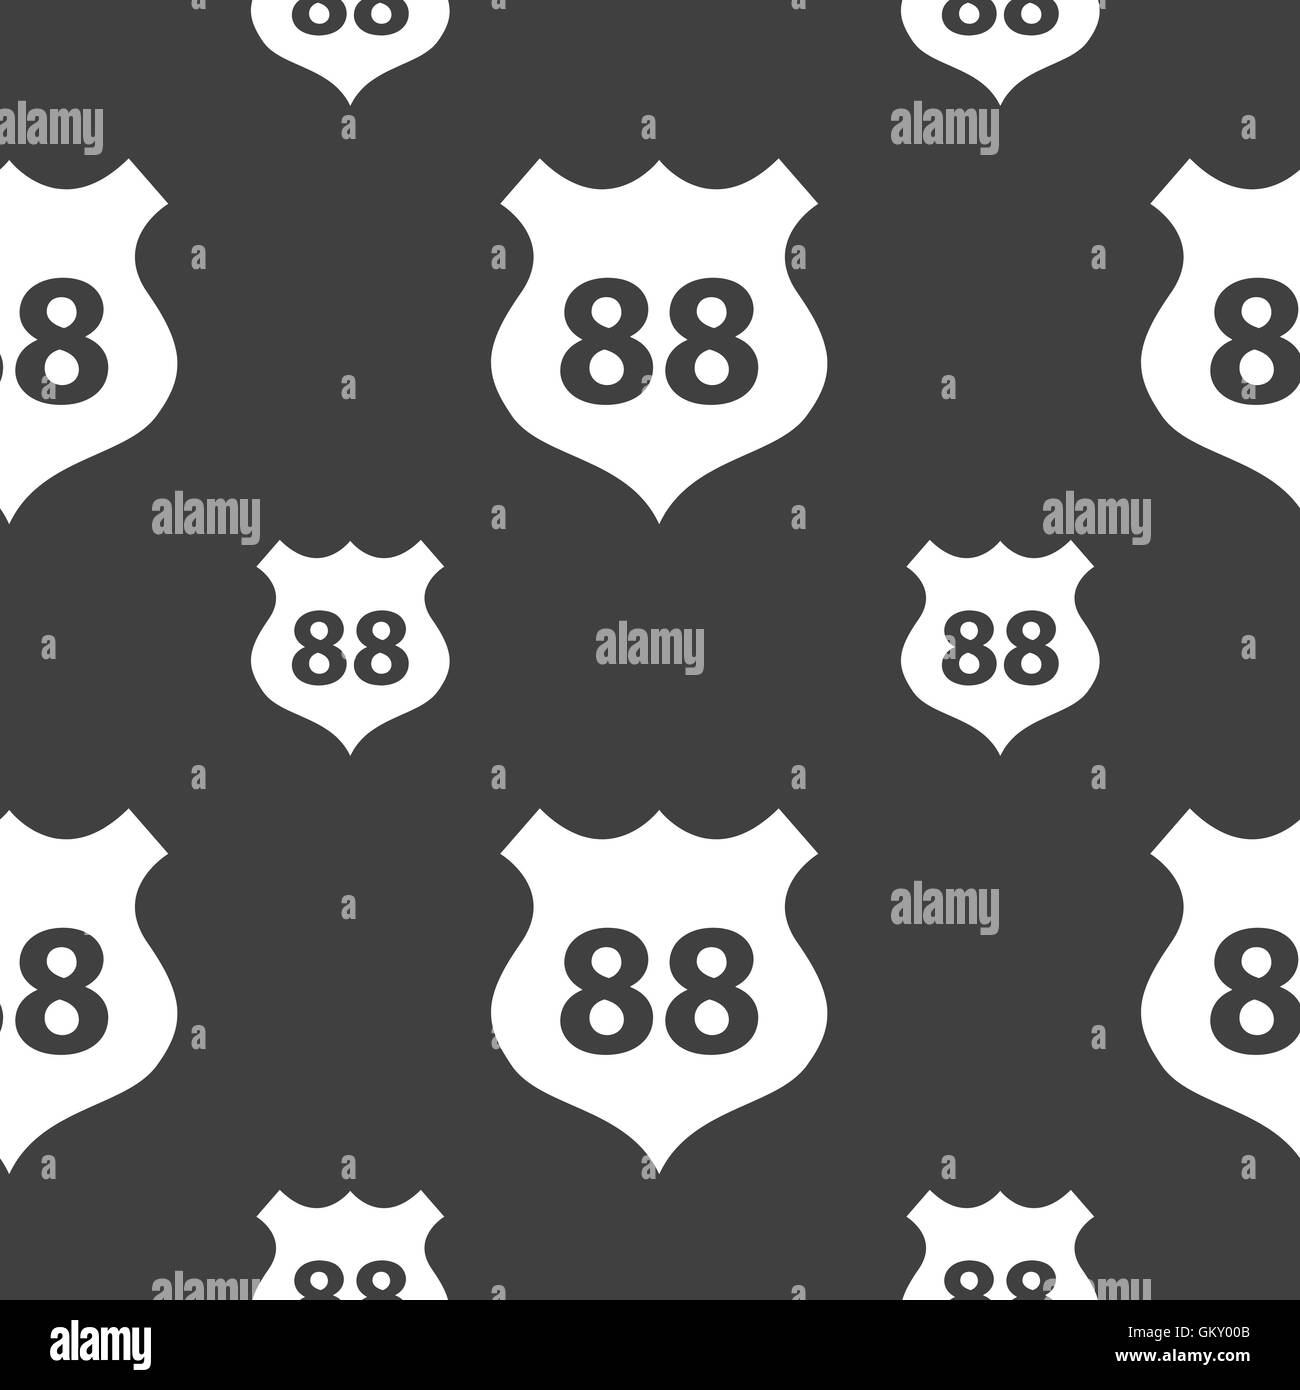 Strecke 88 Autobahn Symbol Zeichen. Nahtlose Muster auf einem grauen Hintergrund. Vektor Stock Vektor